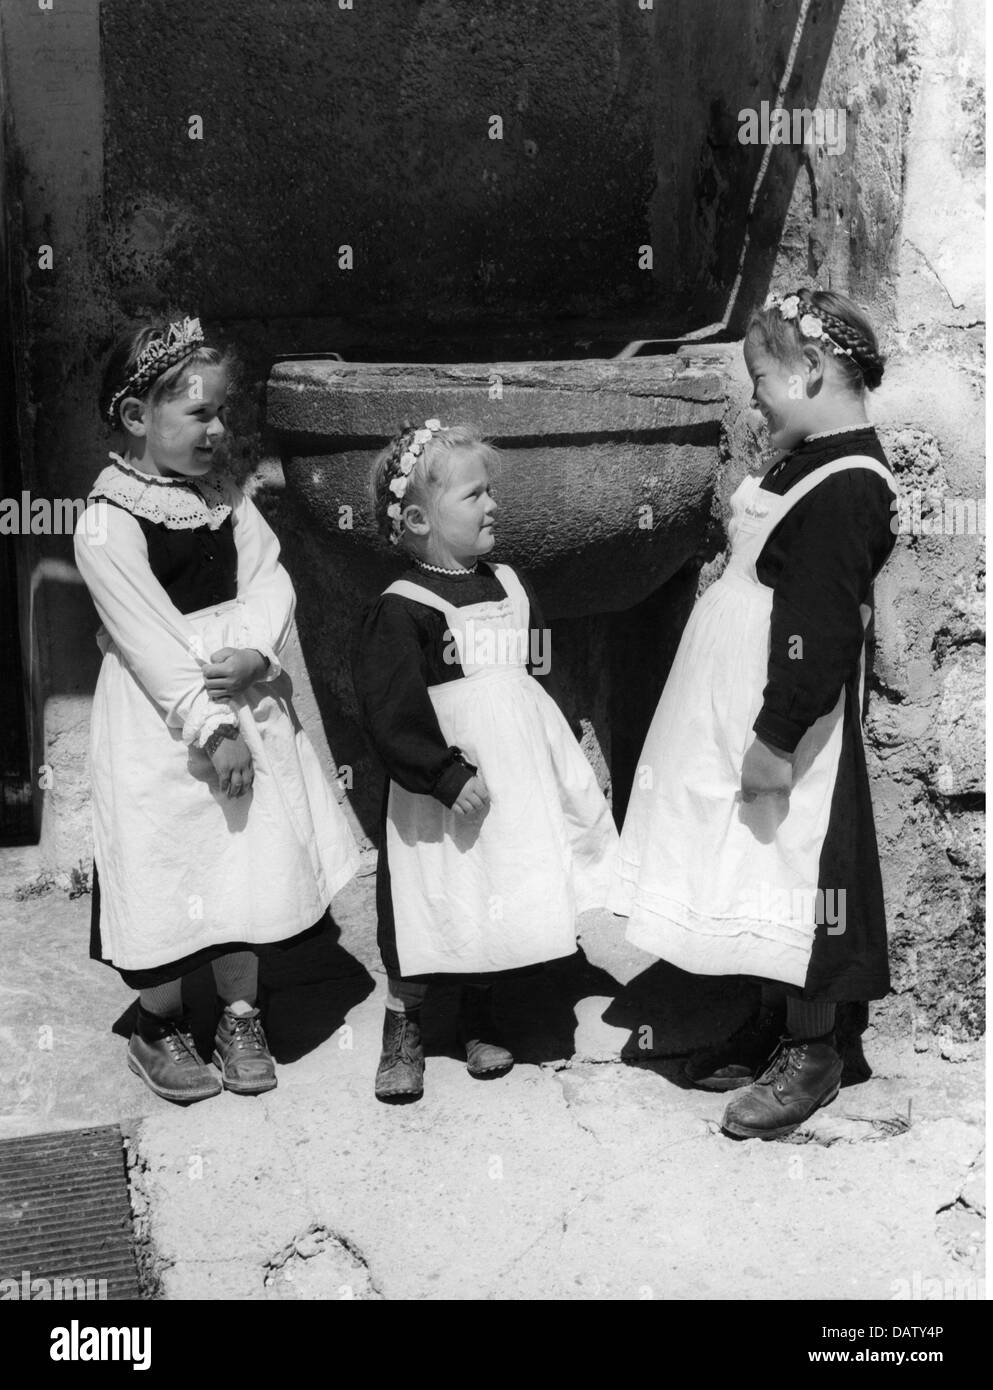 Agricoltura, contadini di montagna, tre bambine in costumi tradizionali,  Cals, Tirolo orientale, anni 50, diritti aggiuntivi-clearences-non  disponibile Foto stock - Alamy